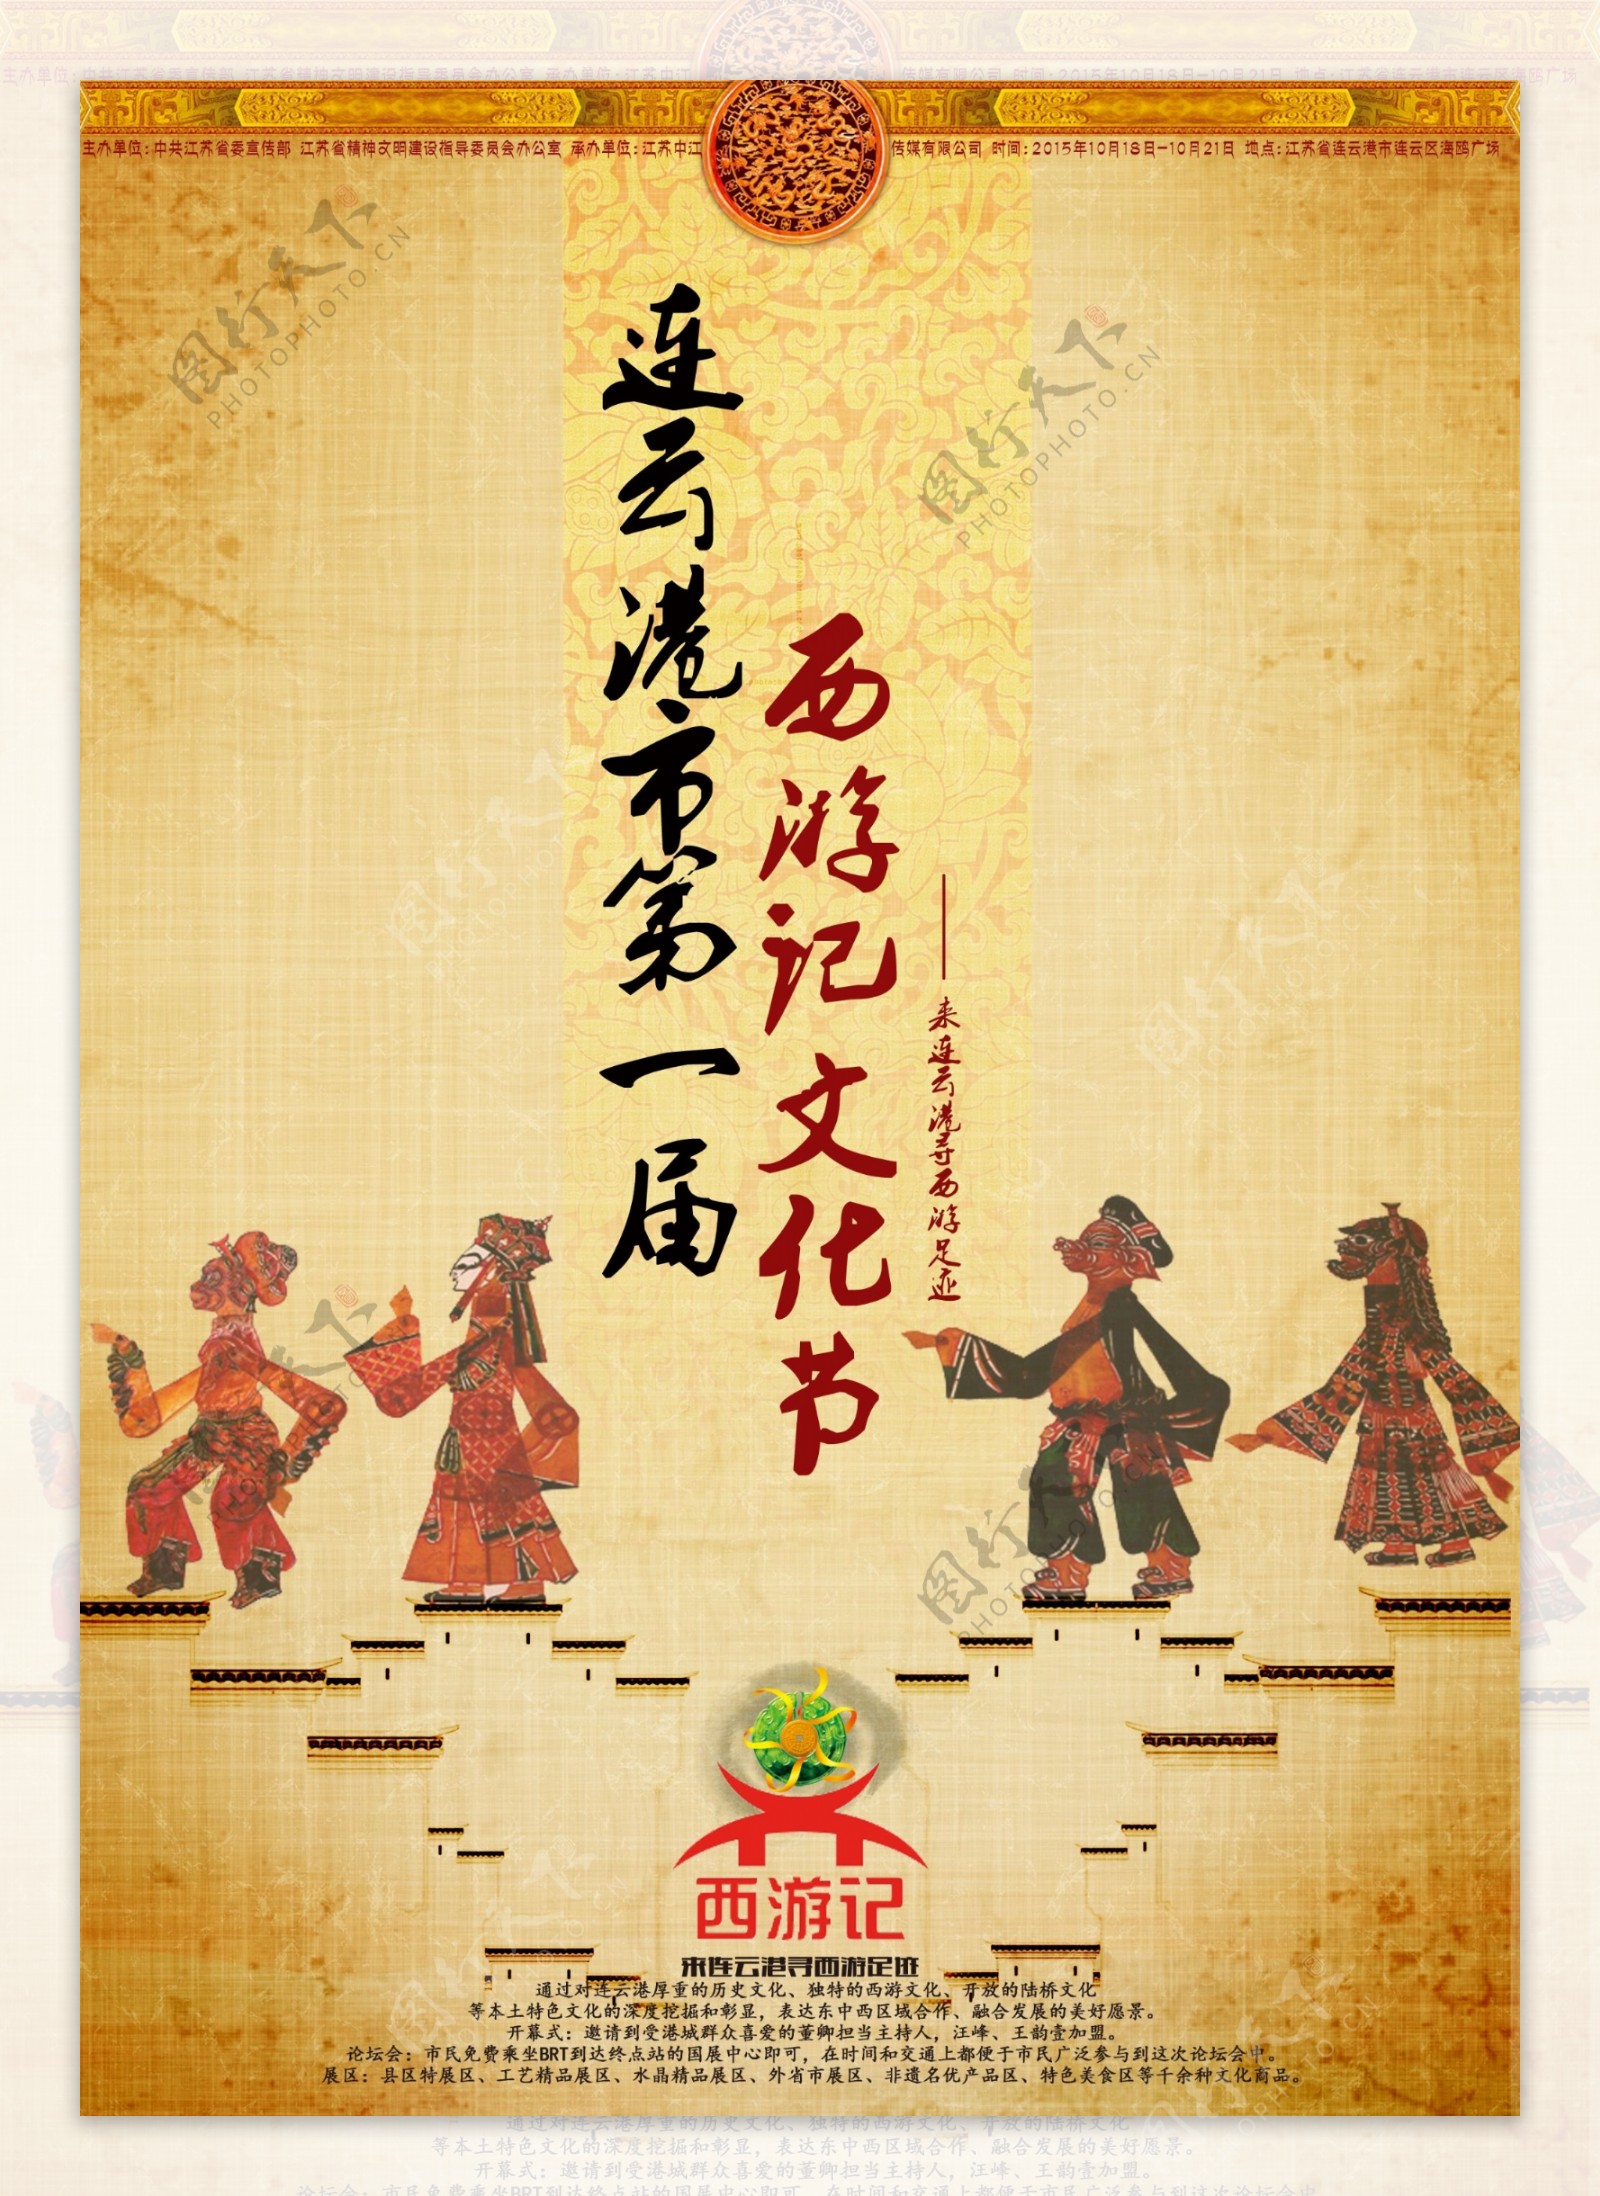 连云港市第一节西游文化节